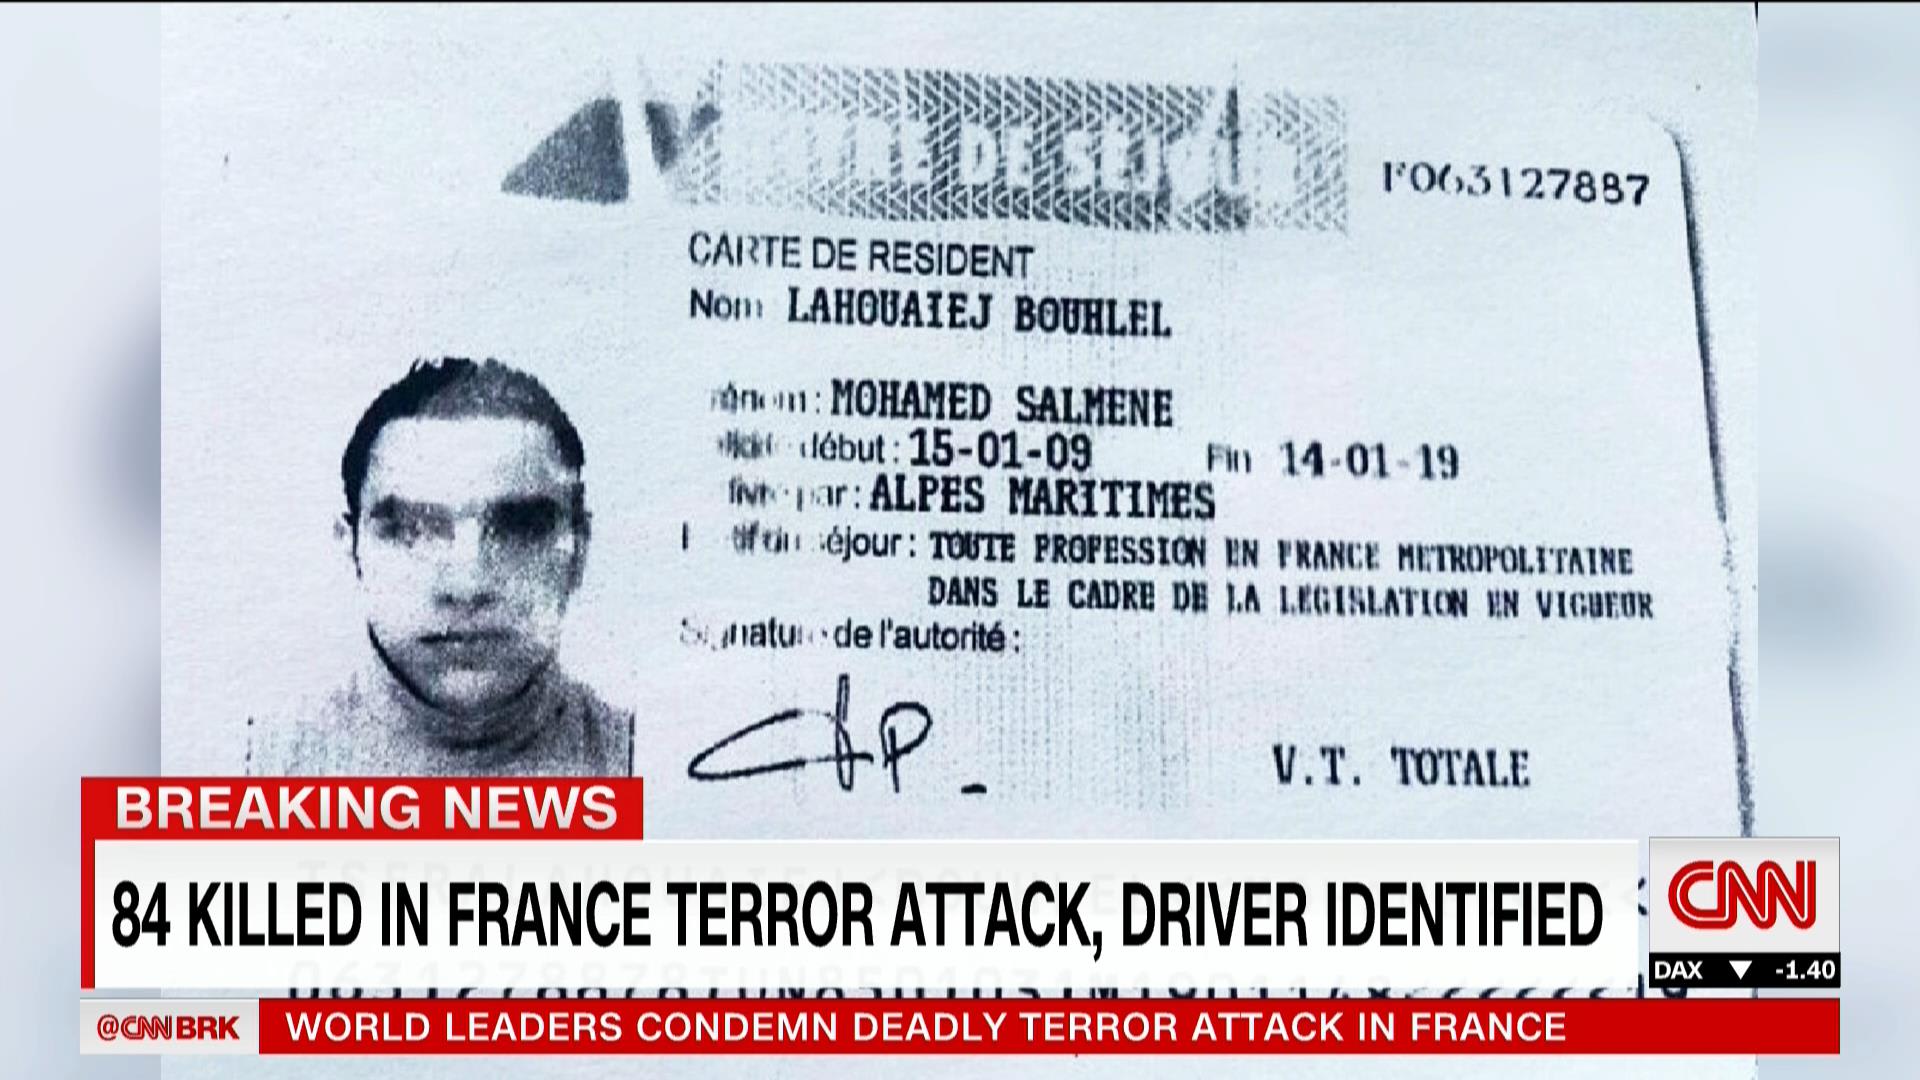 المدعي العام الفرنسي يكشف تفاصيل هجوم نيس ومعلومات عن منفذه وحصيلة القتلى والجرحى